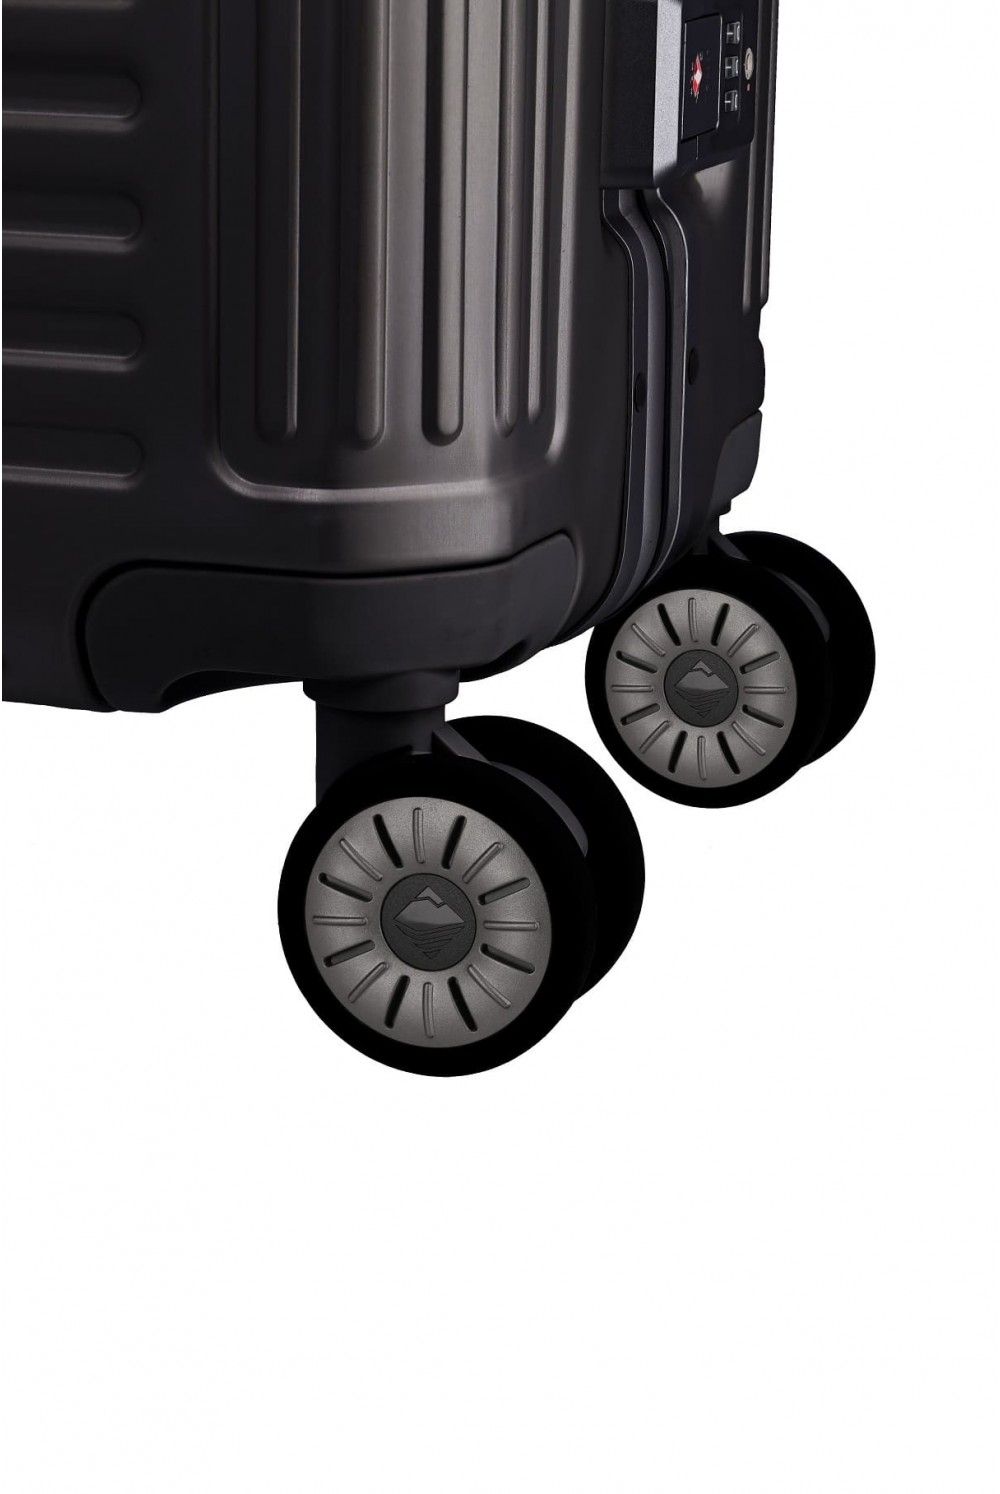 Aluminium Koffer Travelite NEXT 55 4 Rad Handgepäck schwarz